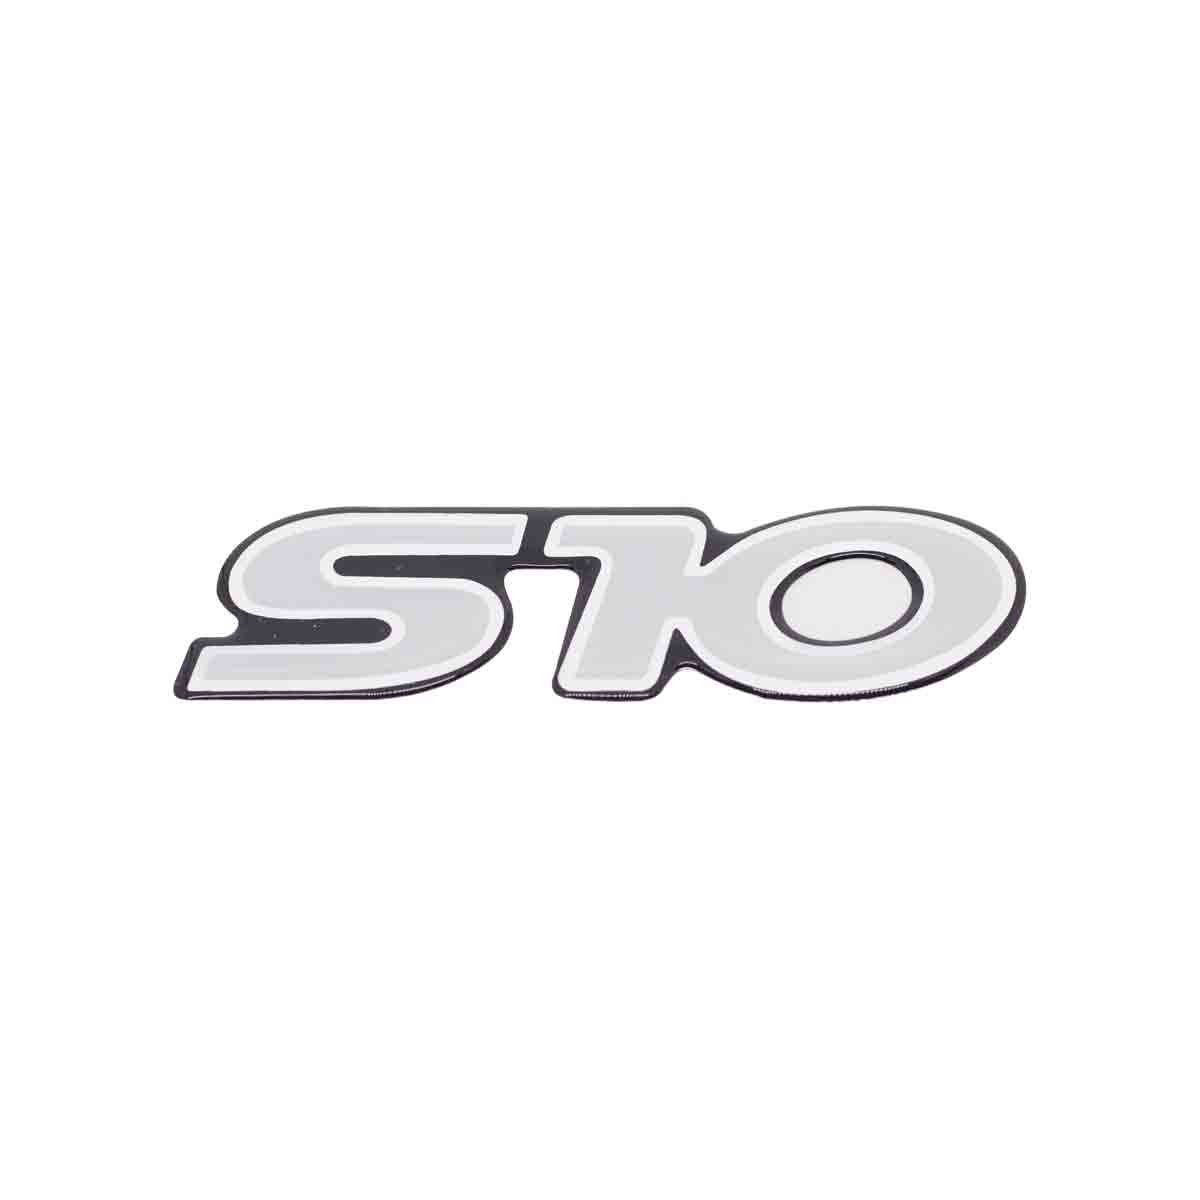 Emblema S10 00/ Prata Resinado